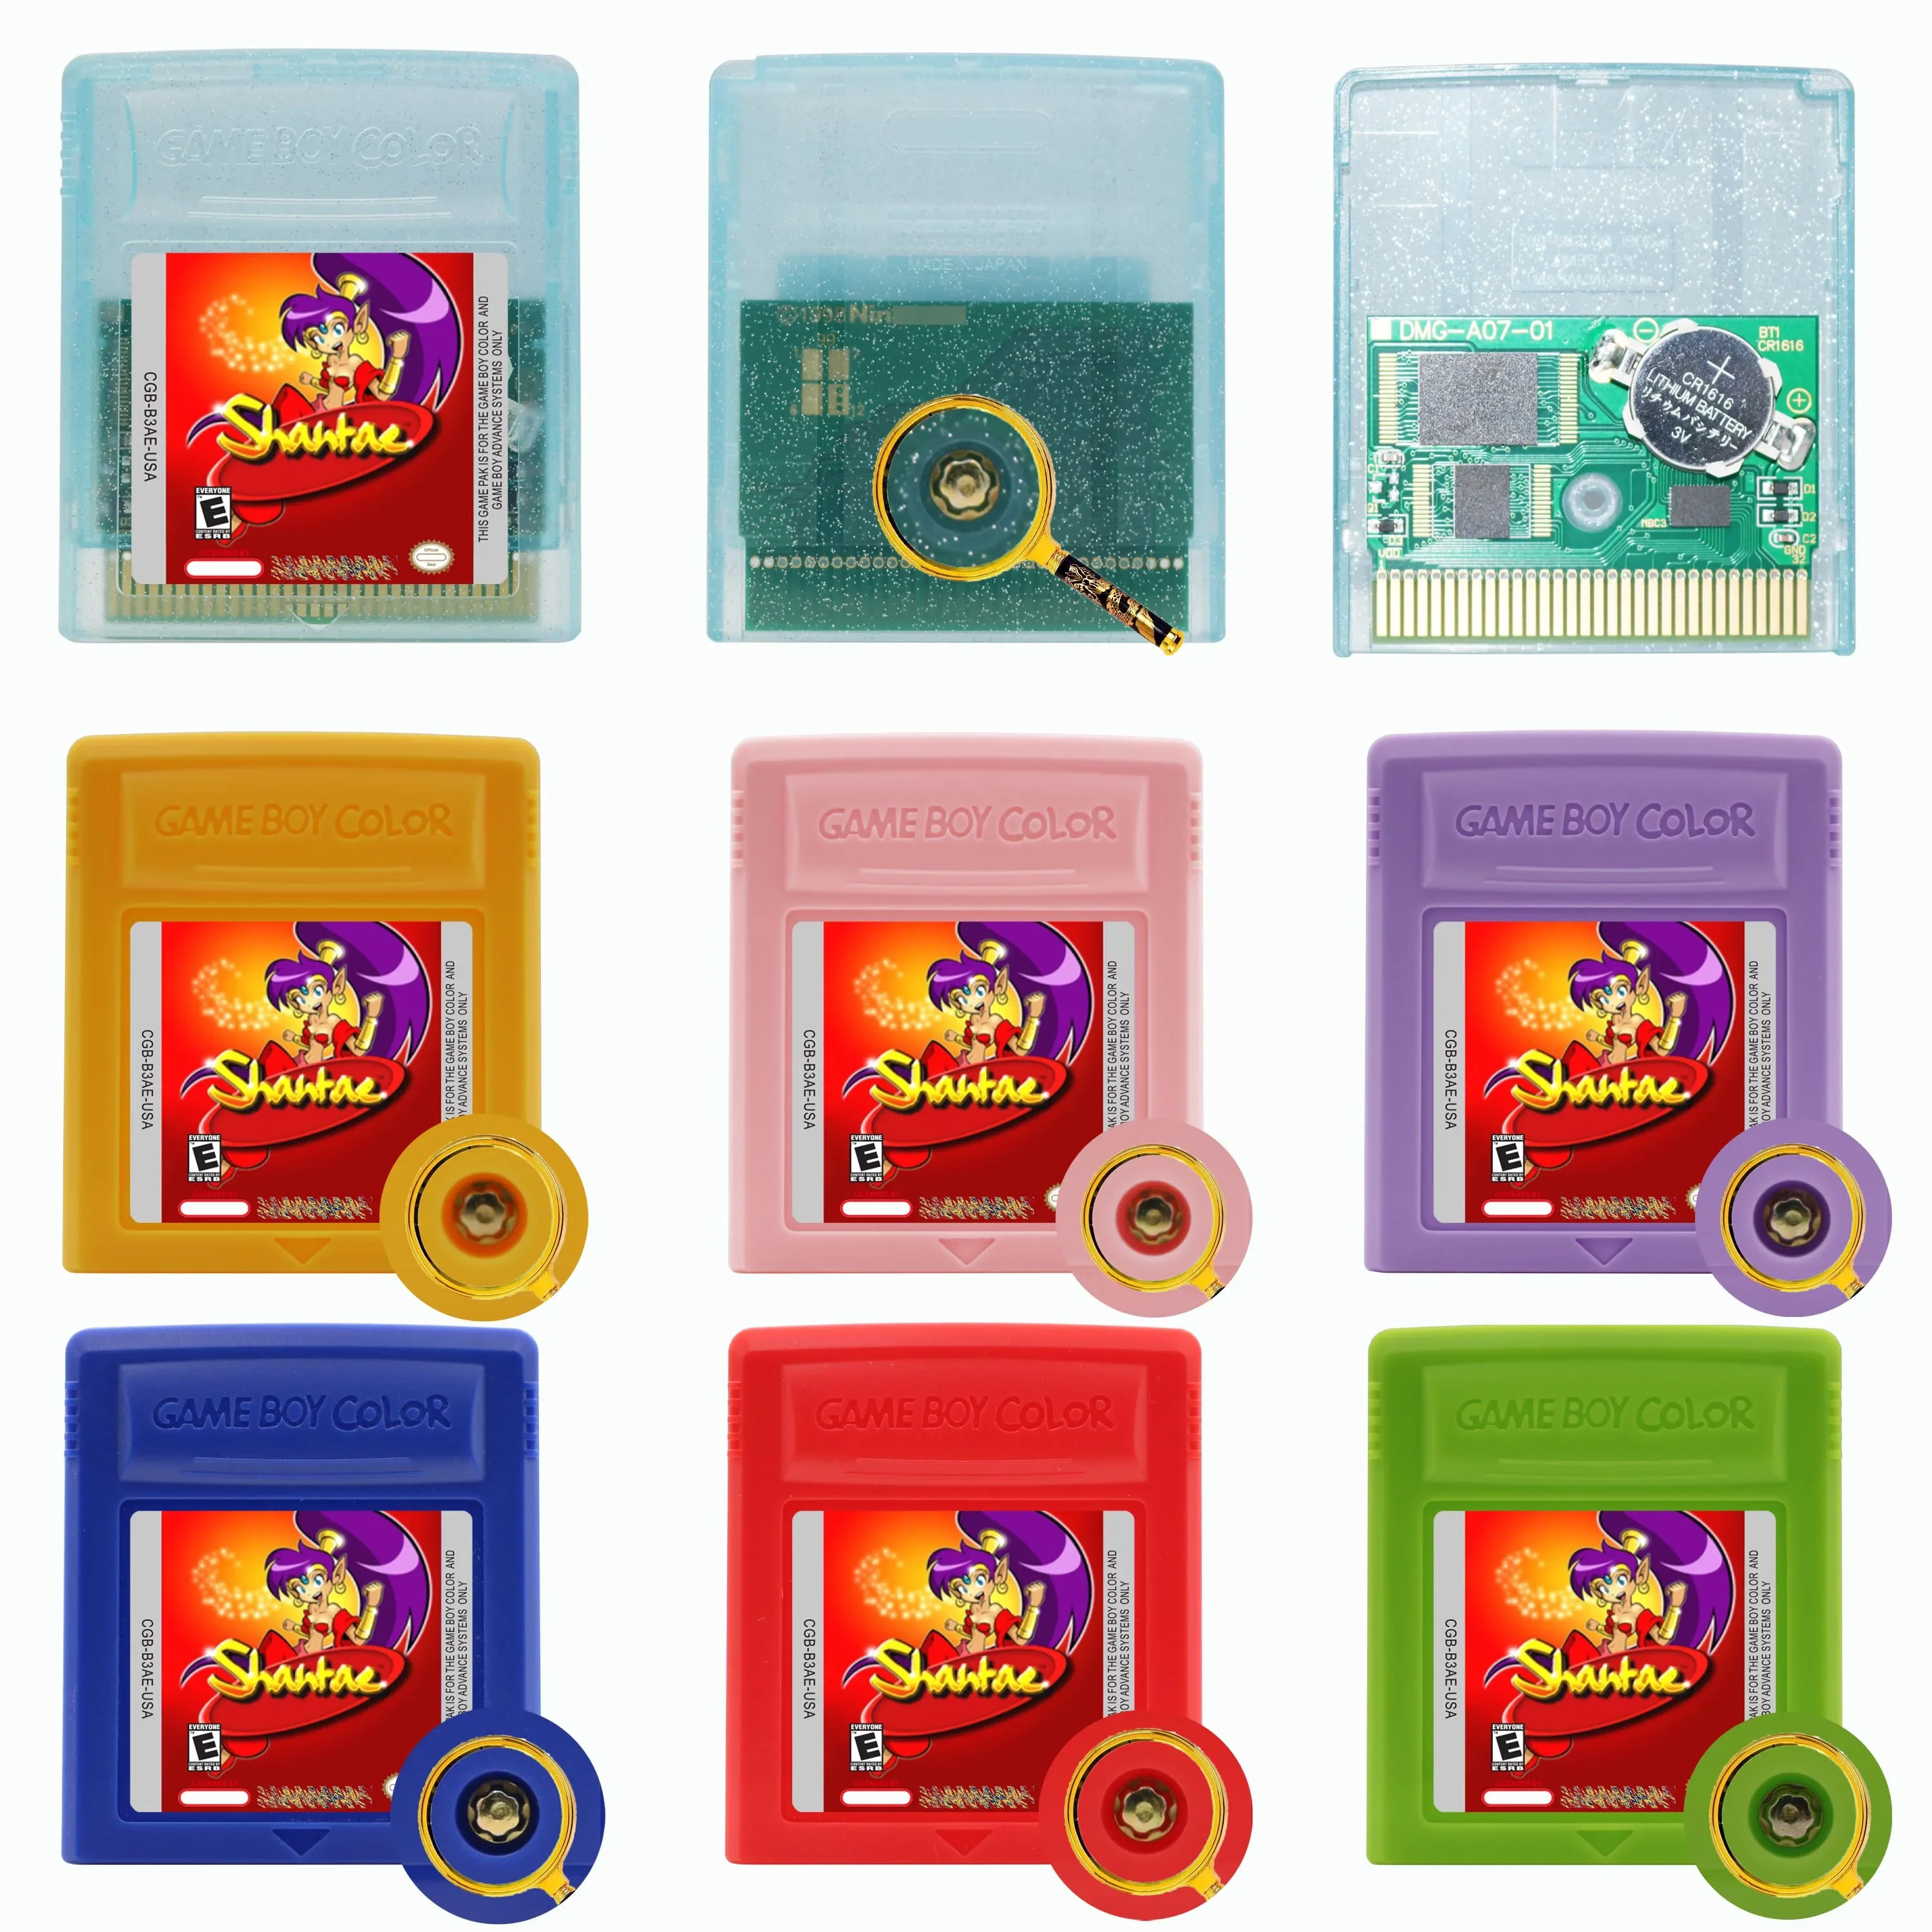 

Картридж для игровой консоли Shantae GBC, 16-битная картридж с шестигранным винтом для GBC/GBA SP, английский язык